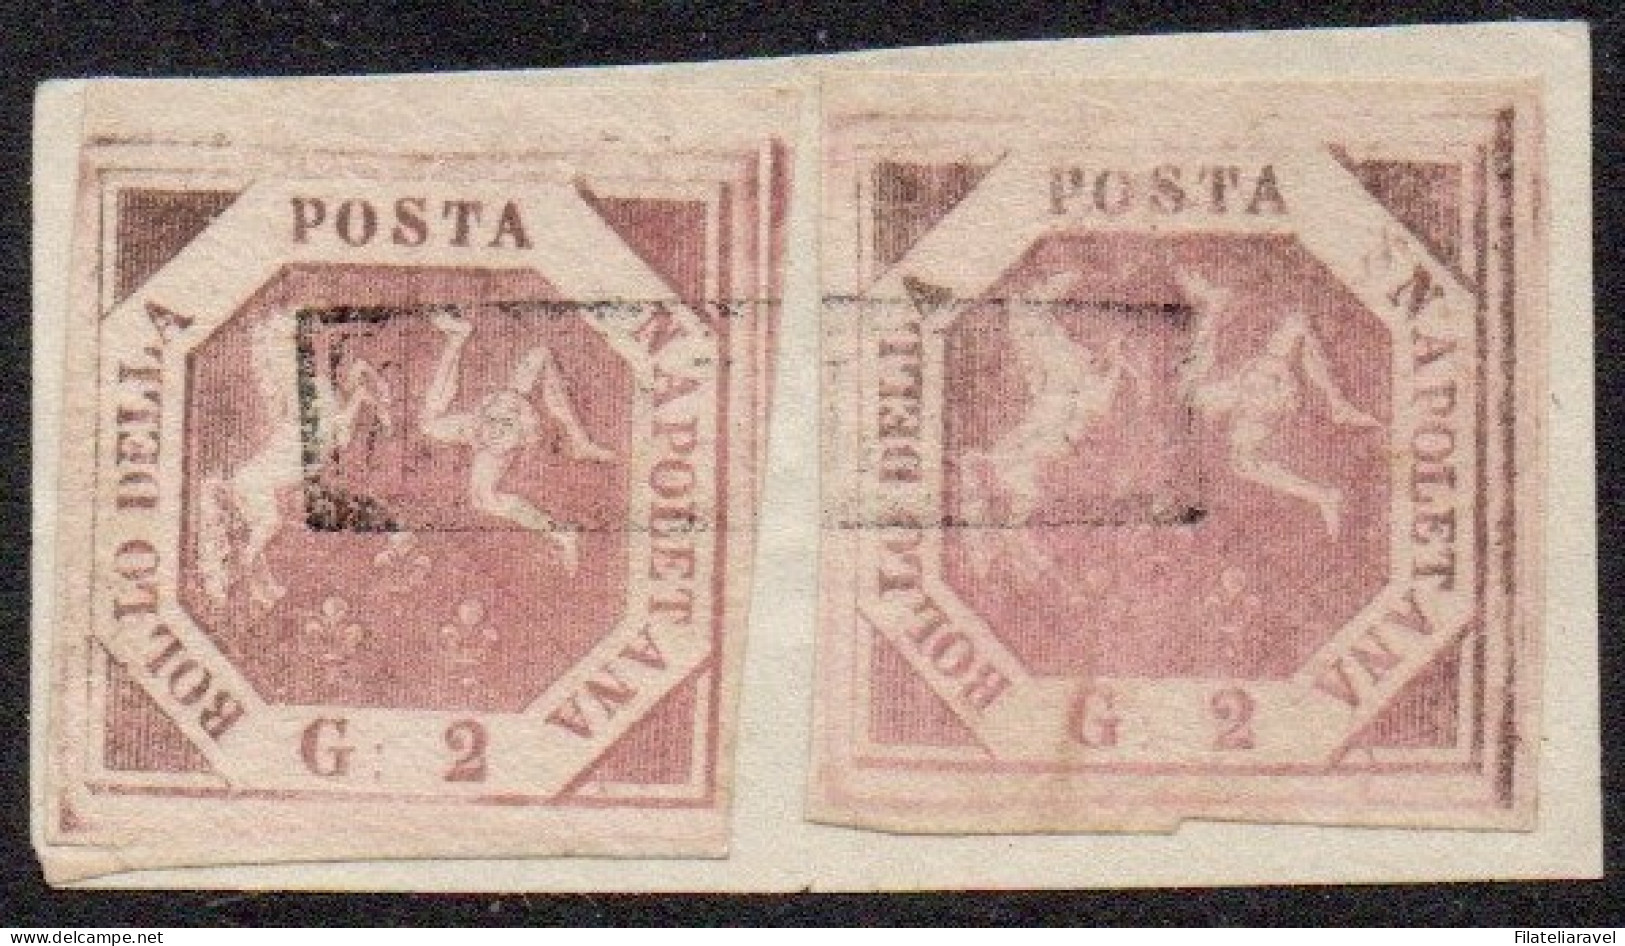 Fr 1858 - Napoli 2 Valori Su Frammento Da 2 Grana, I Tavola, Lilla Rosa Intenso (5b), Cert. Chiavarello (3.200) - Naples